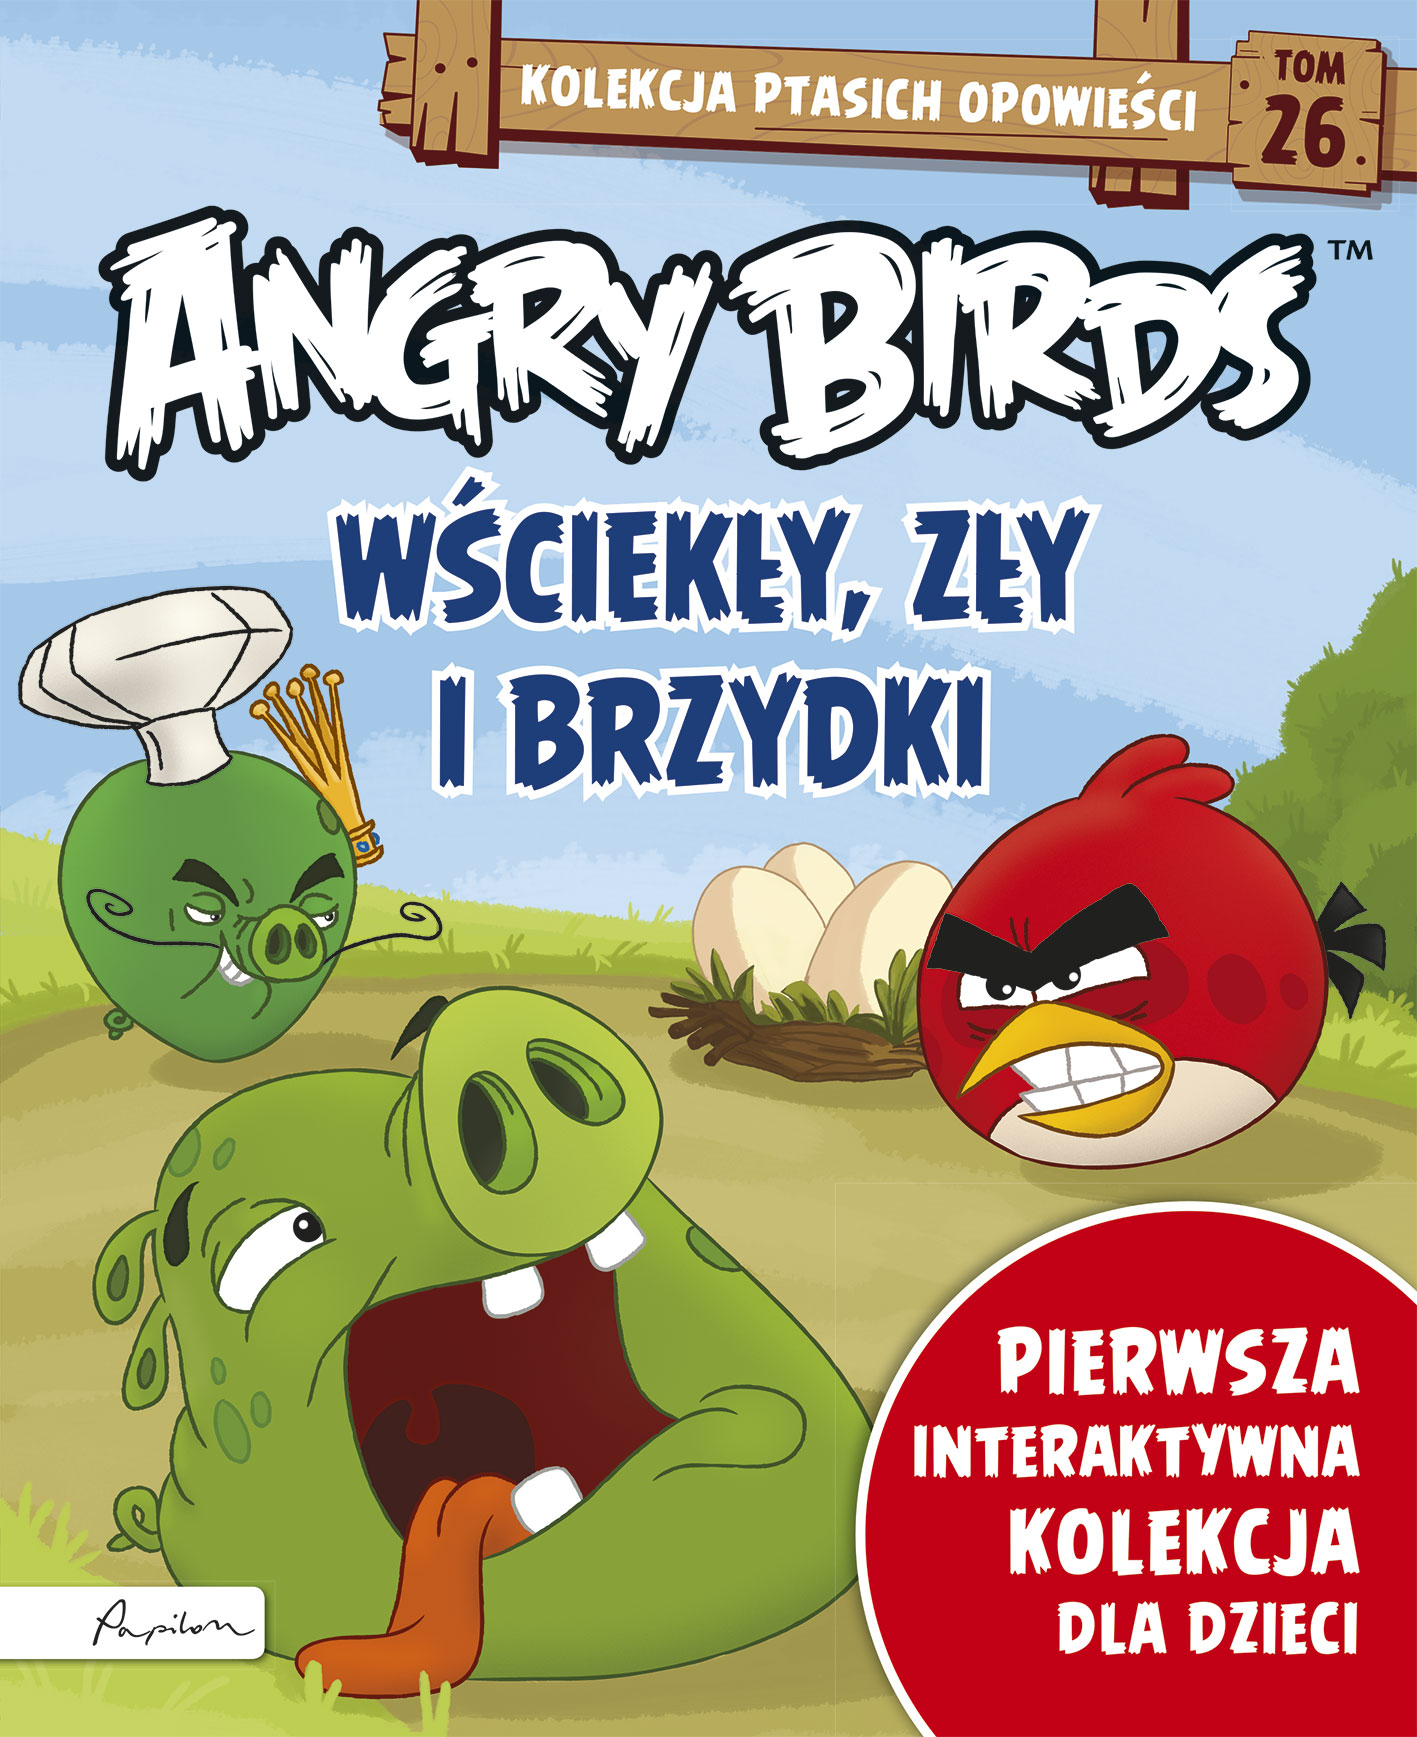 Angry Birds. Kolekcja ptasich opowieści 26. Wściekły, zły i brzydki.